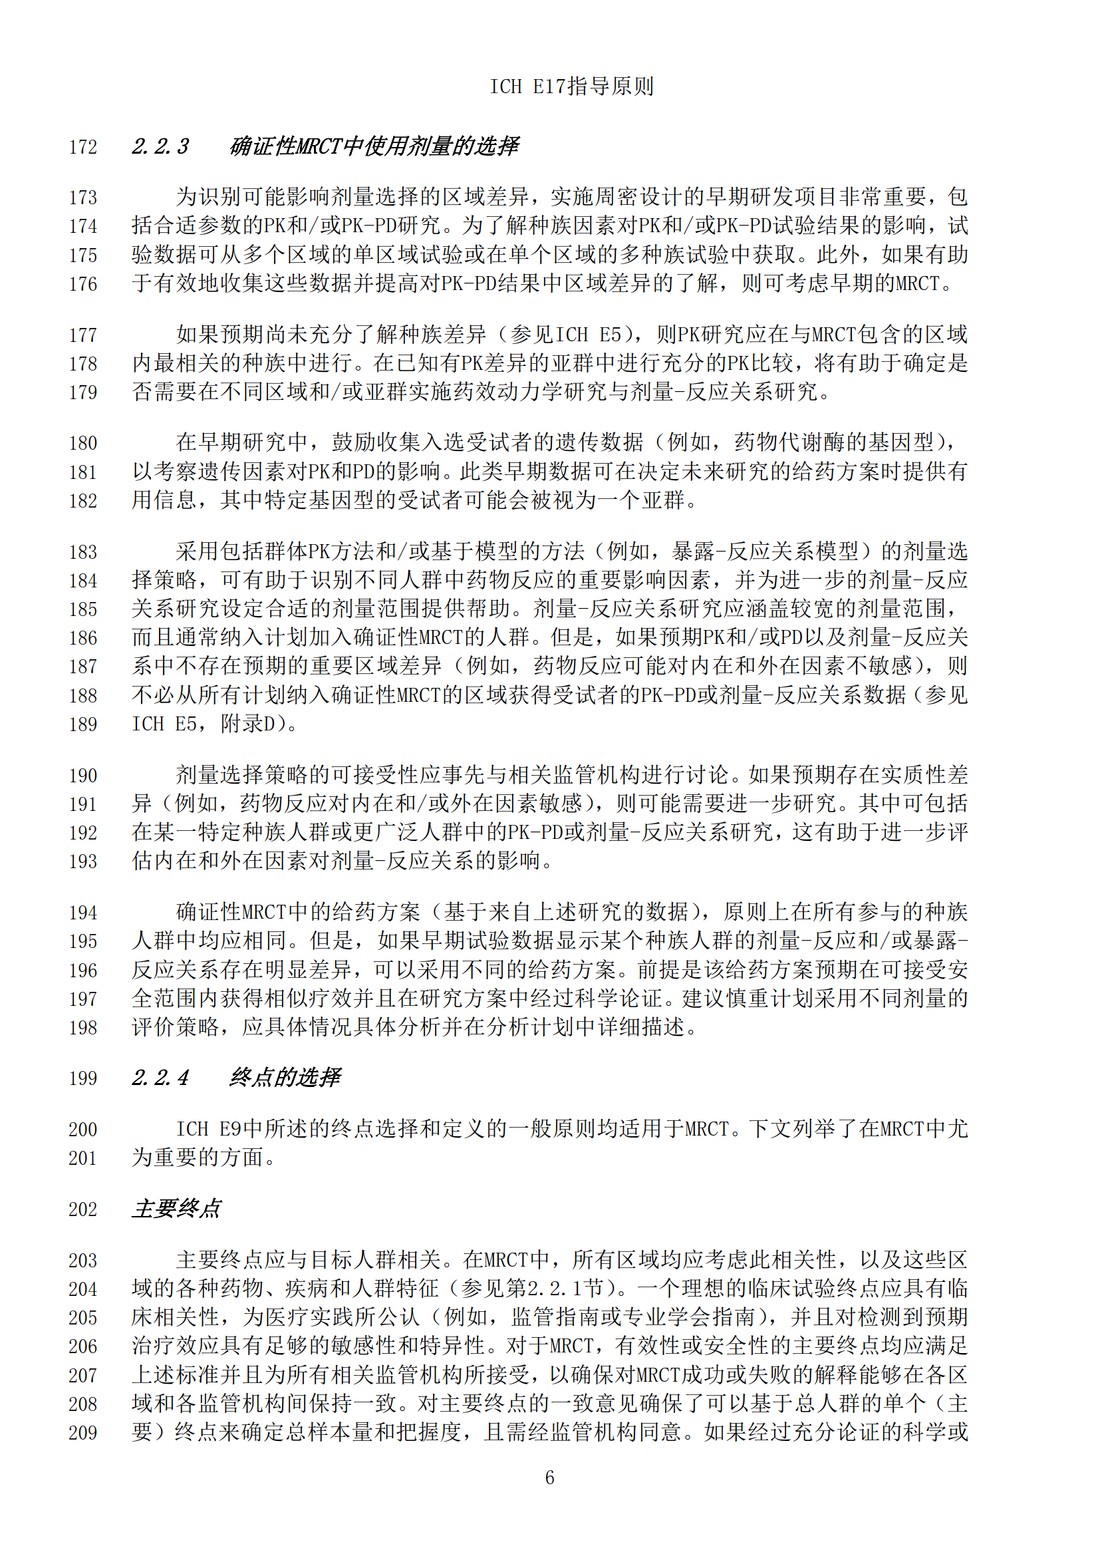 E17多区域临床试验计划与设计的一般原则（中文翻译公开征求意见稿）_09.jpg